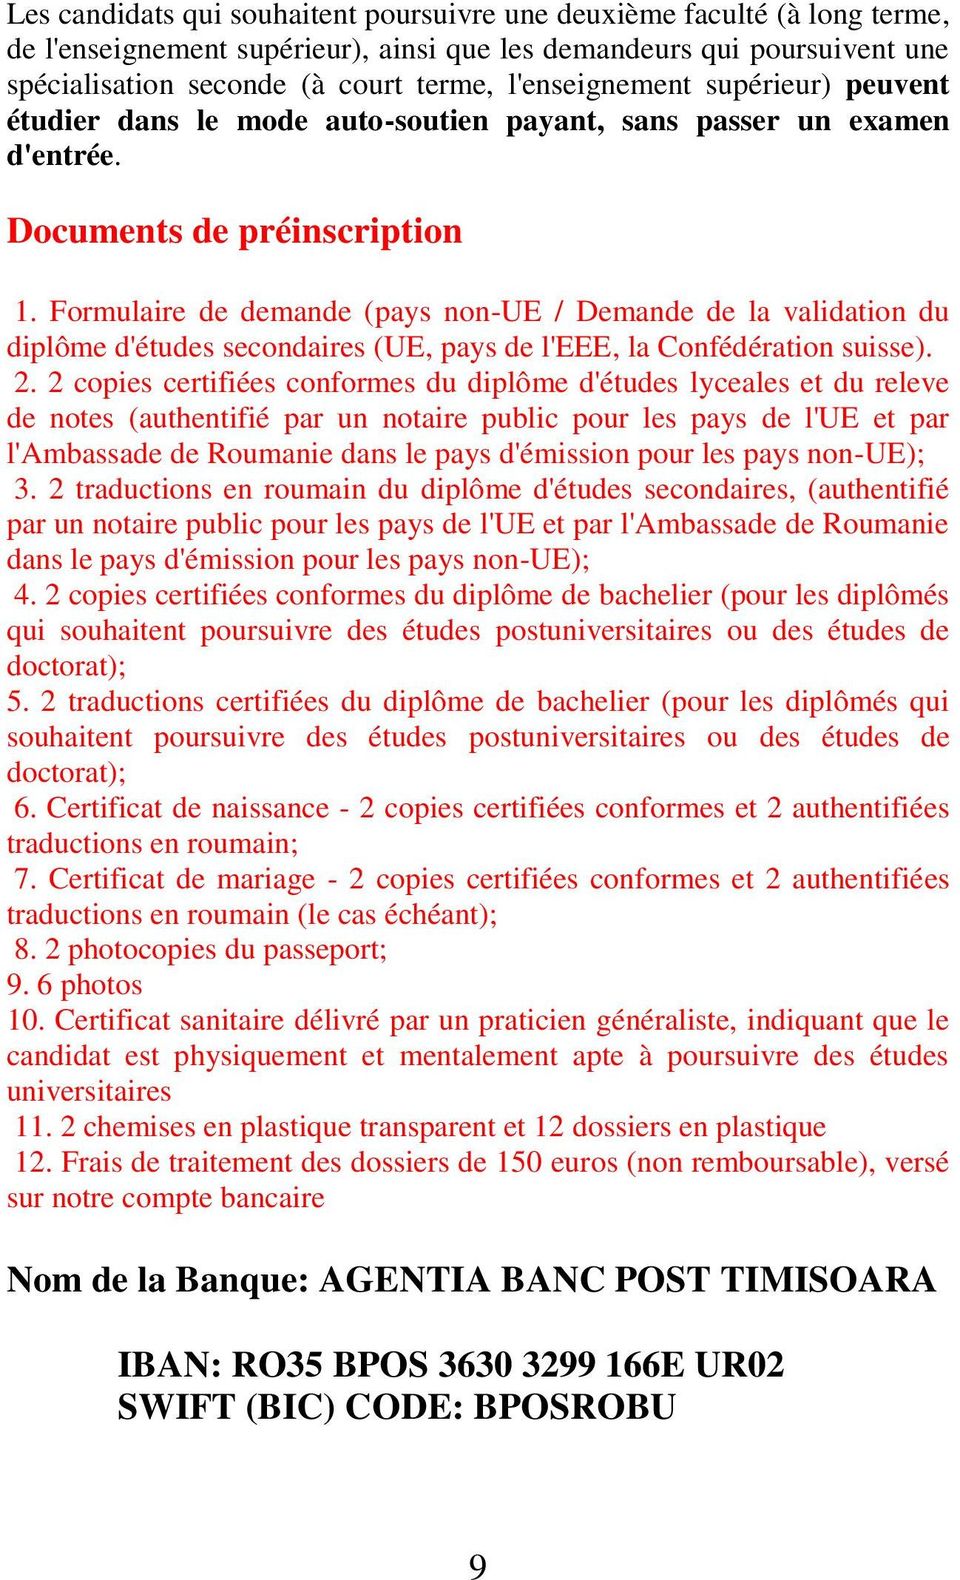 Formulaire de demande (pays non-ue / Demande de la validation du diplôme d'études secondaires (UE, pays de l'eee, la Confédération suisse). 2.